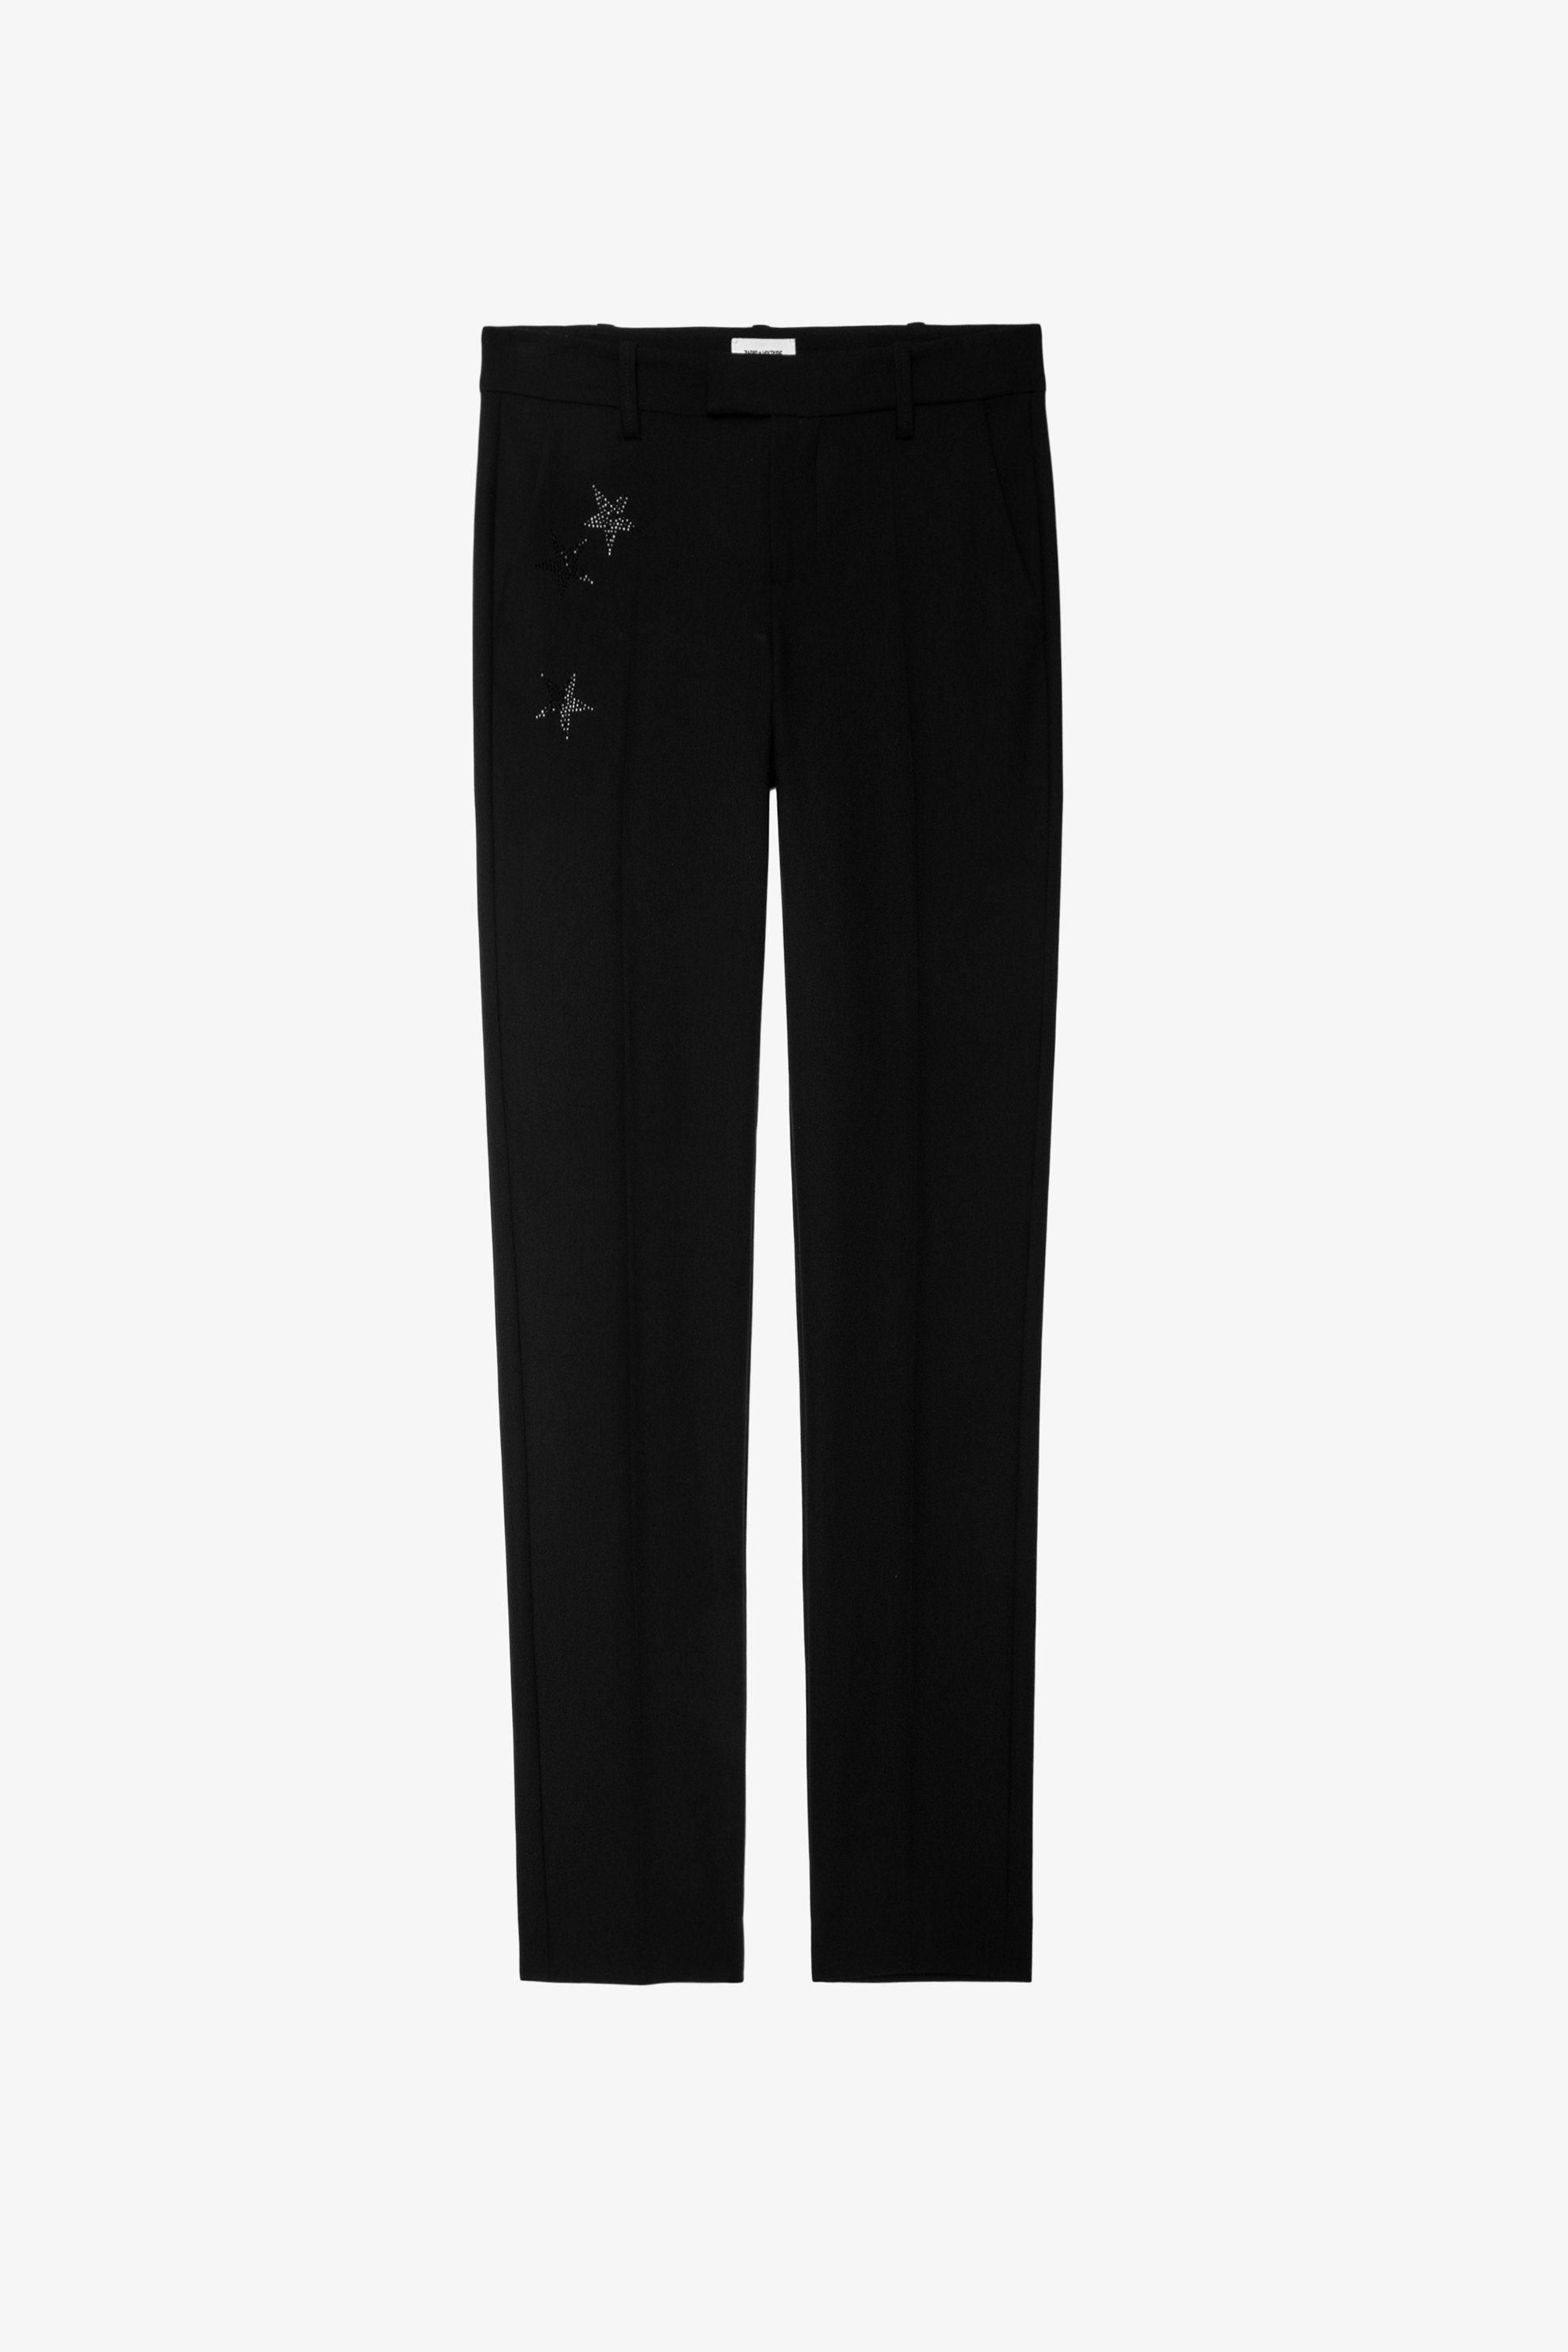 Pantalón Prune Strass Star - Pantalón de traje negro de mujer de Zadig&Voltaire con estrellas de strass en el bolsillo.